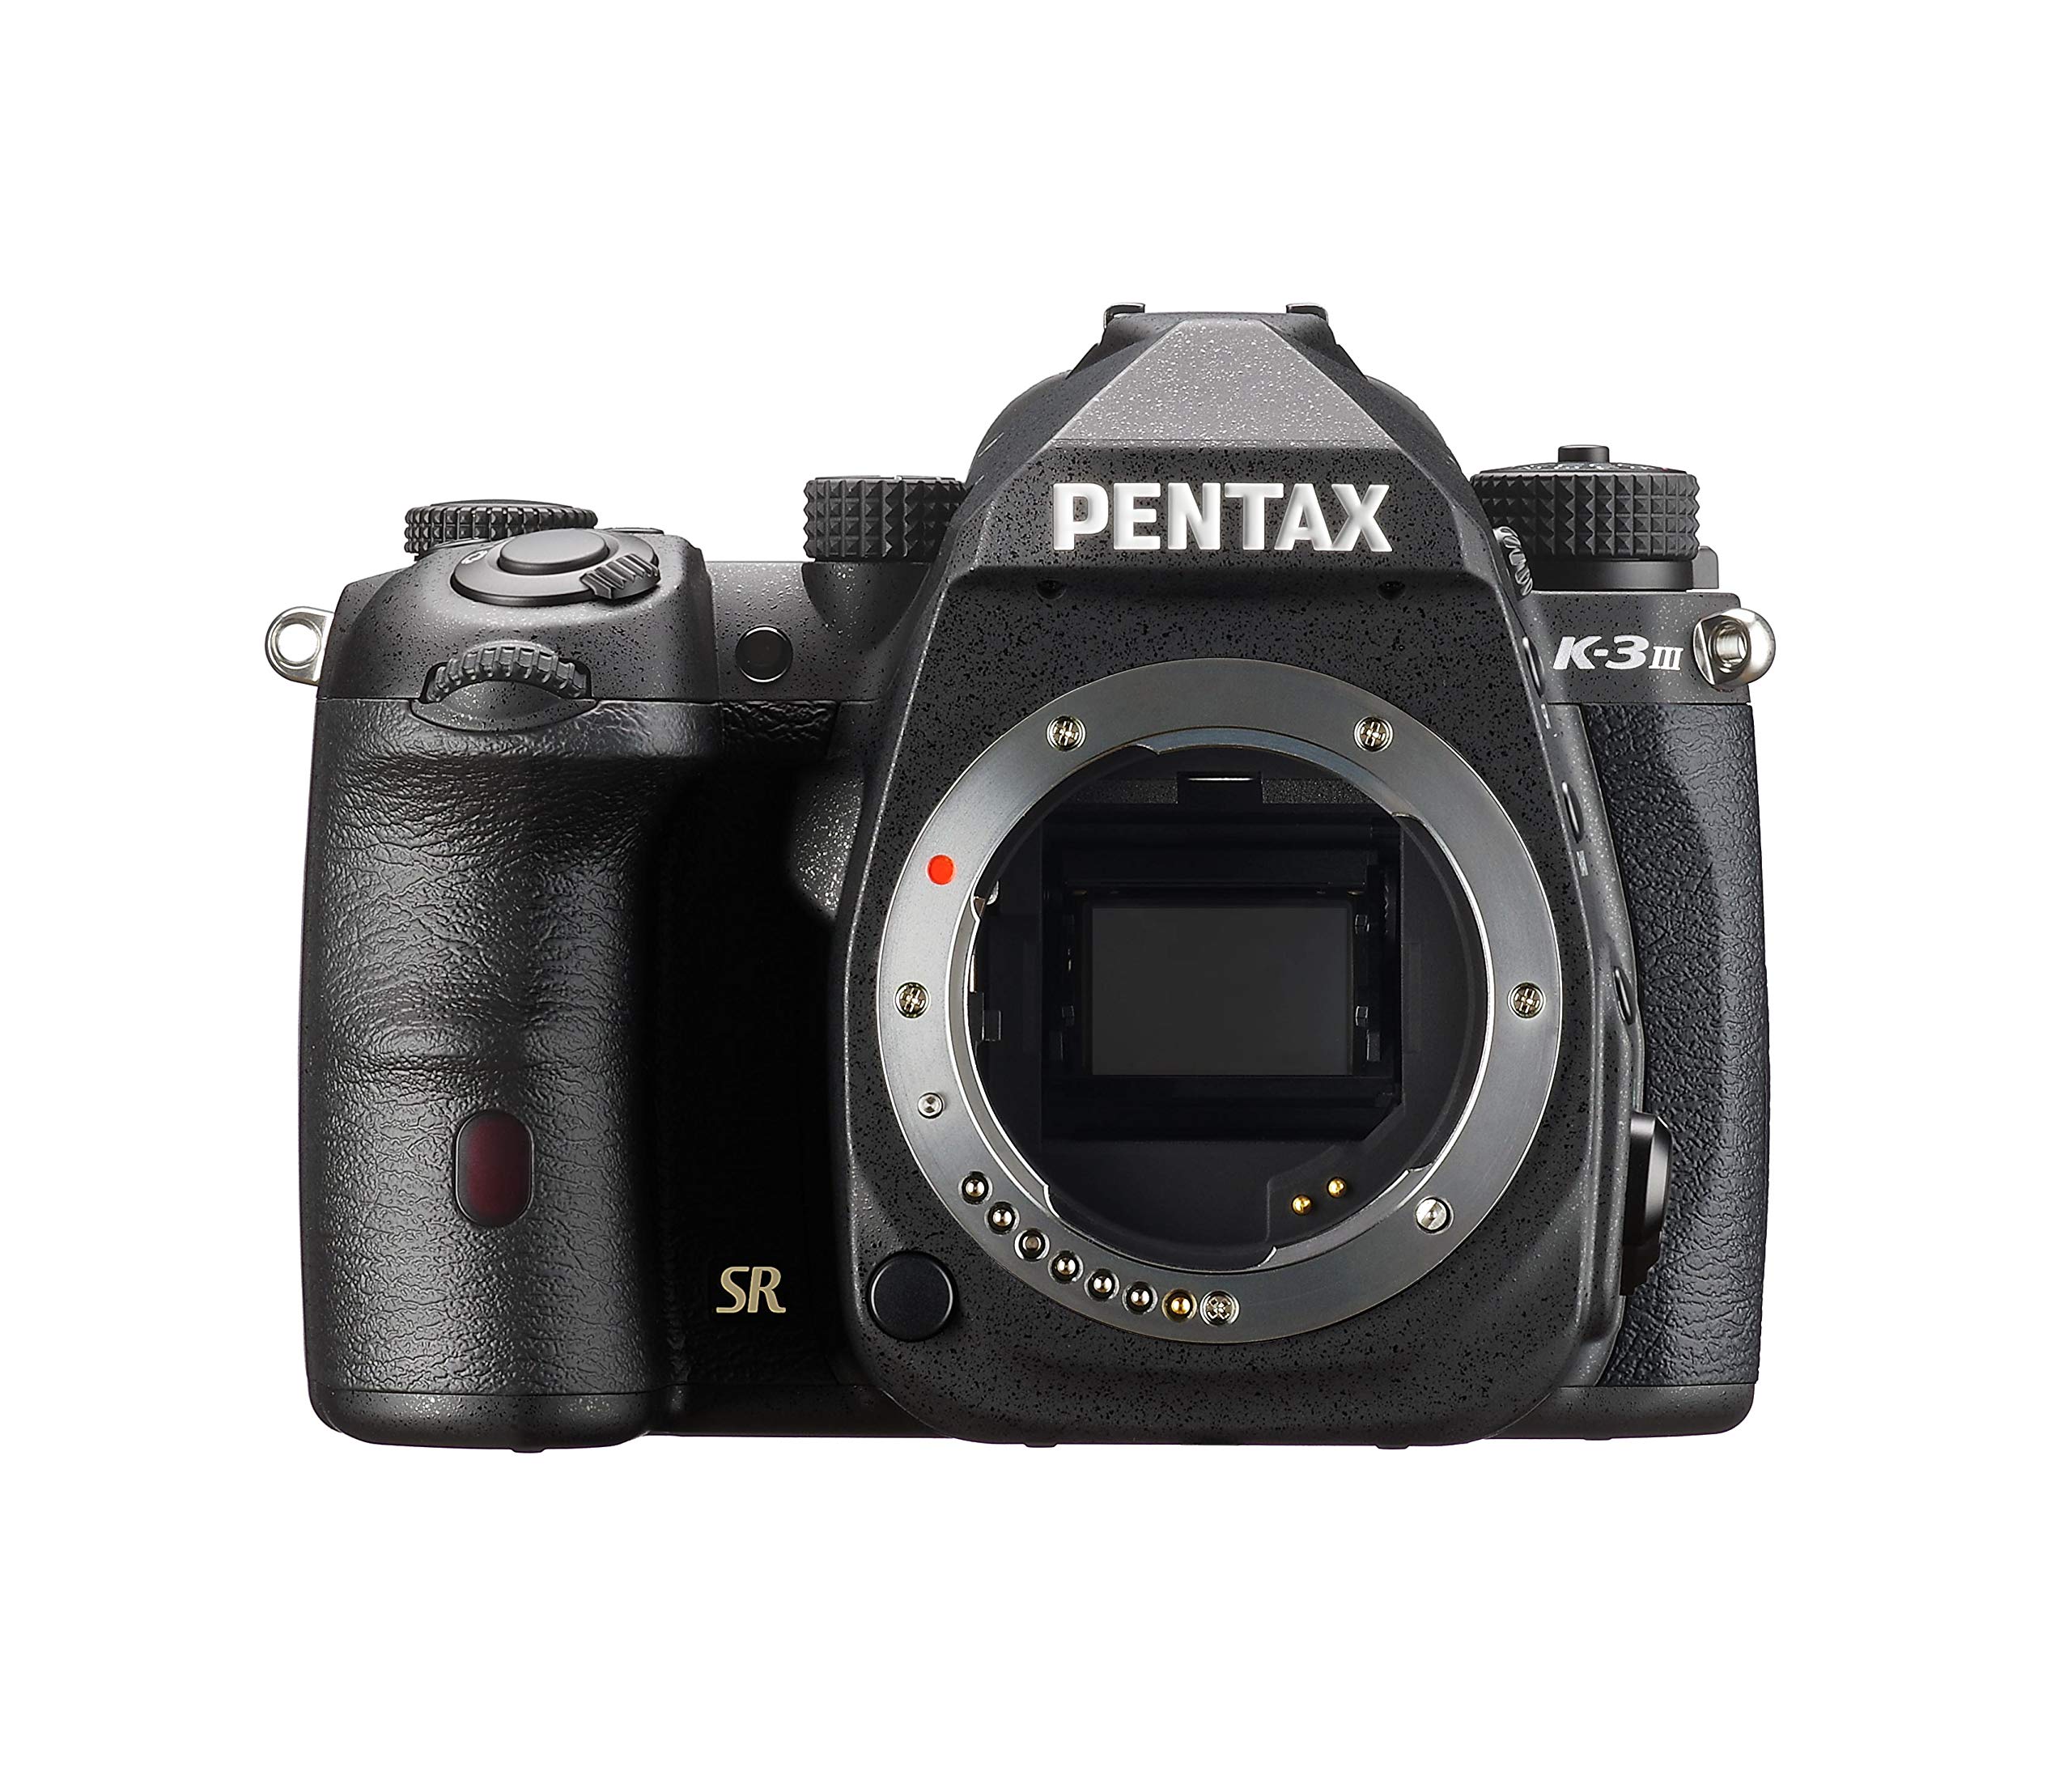 Pentax K-3 Mark III APS-C DSLR Kamera Gehäuse in schwarz - Bildfeld 100%~1,05x optischer Sucher, 5-Achsen 5,5 Stufen In-Body SR Mechanismus, ISO 1,6 Millionen, wetterfest, bis zu 12fps, Touchscreen